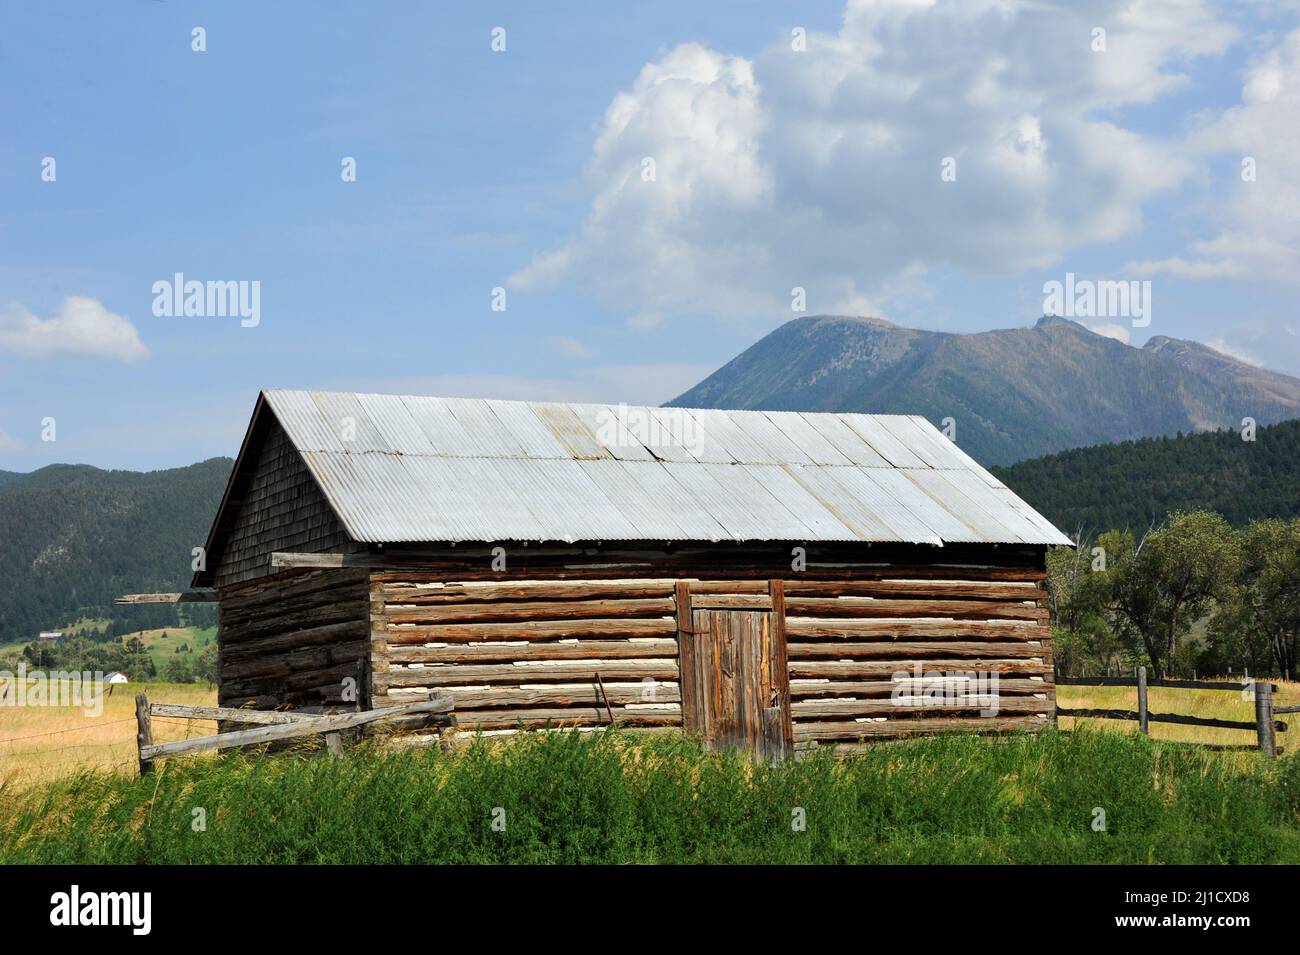 Gros plan d'une cabane en rondins entourée d'un pré, d'herbe et des monts Absaroka du Montana. Banque D'Images